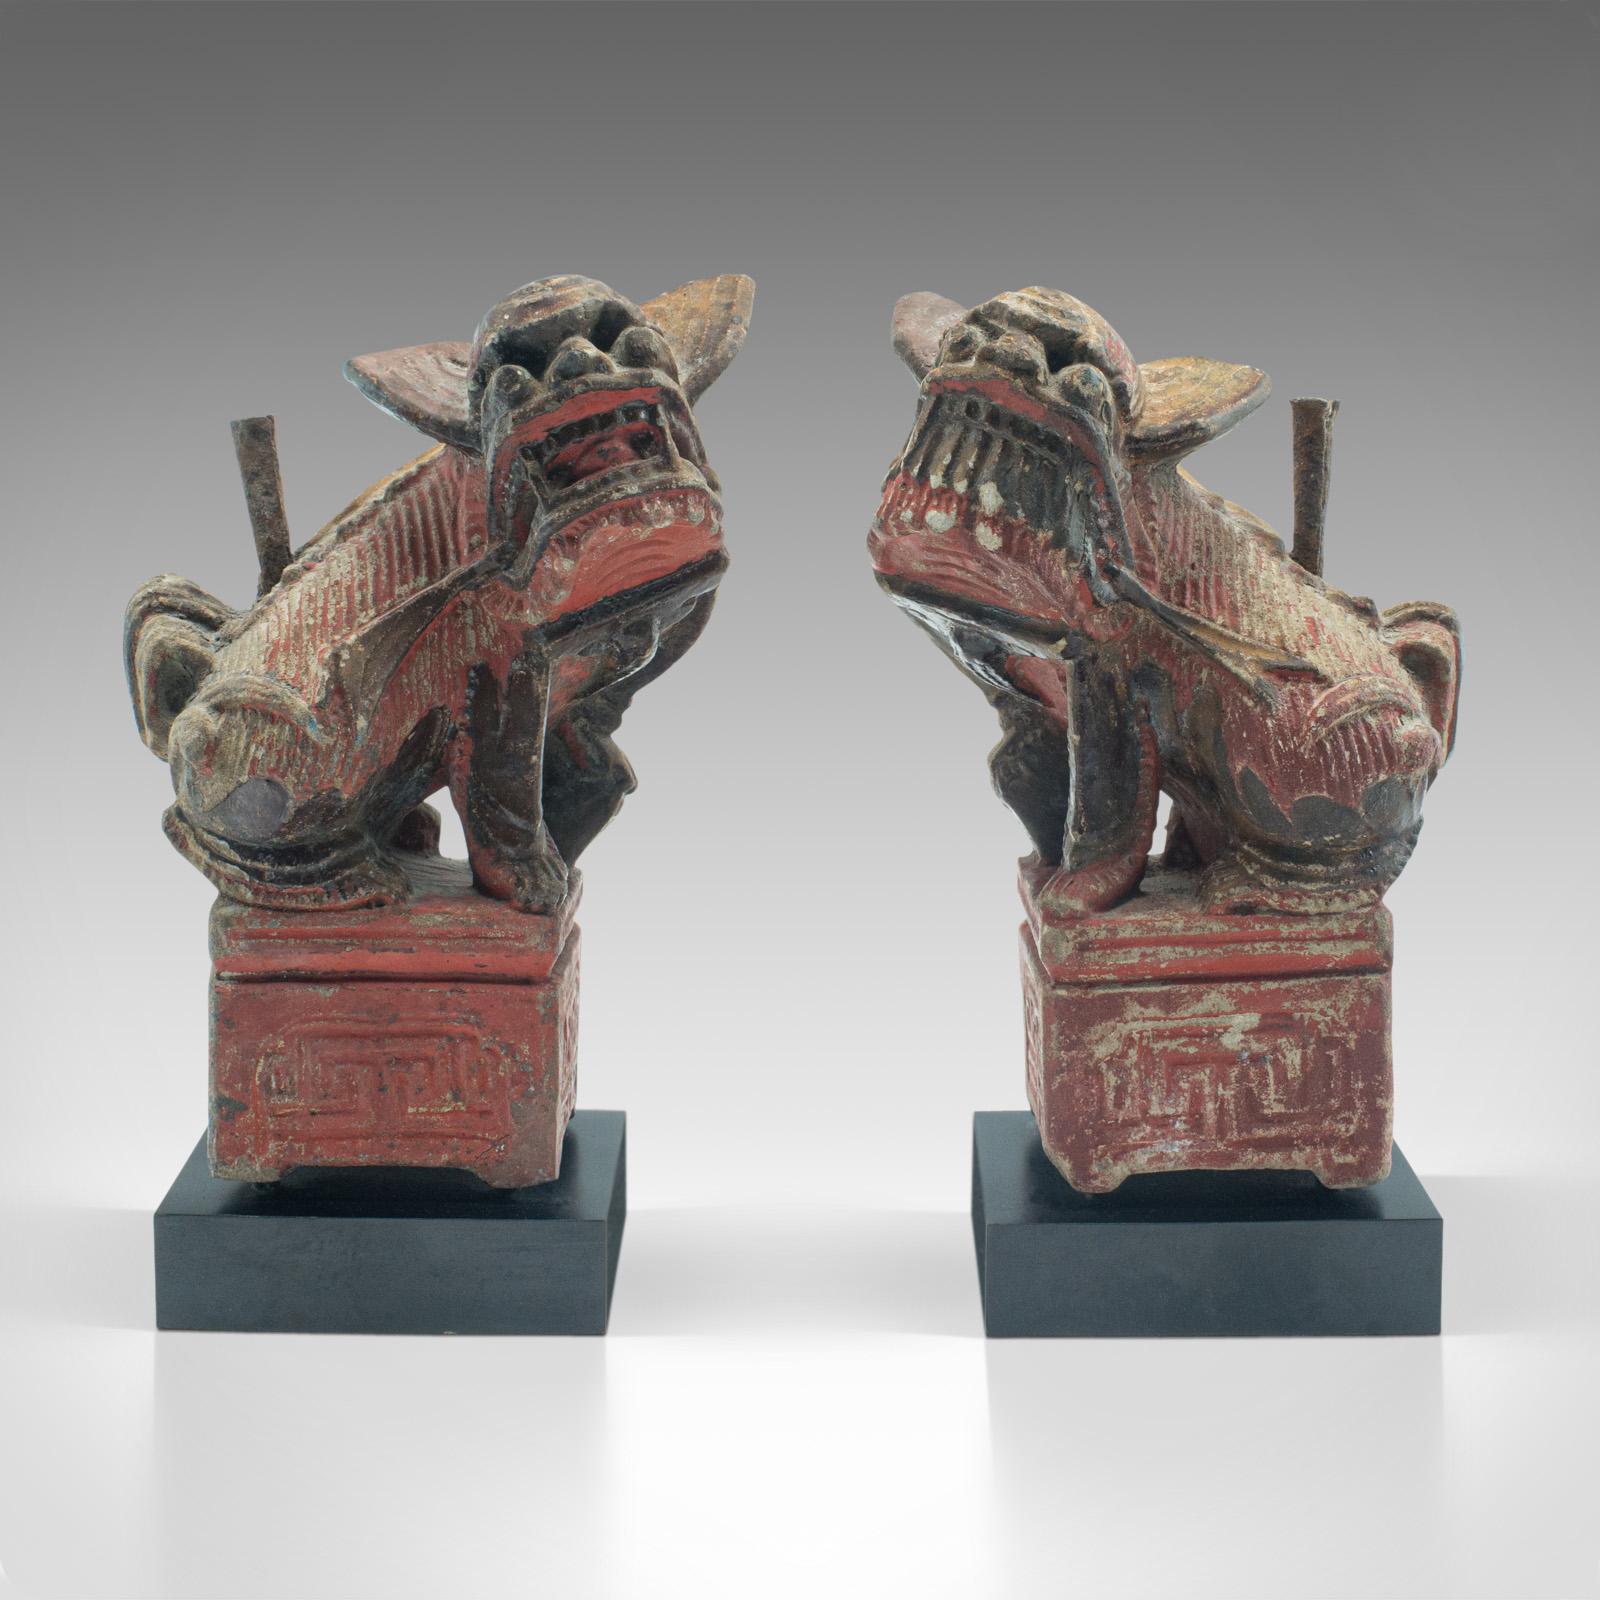 Dies ist ein Paar antiker Räuchergefäße. Eine orientalische, dekorative Stein Zensur oder Wächter Löwe Buchstützen, aus der späten viktorianischen Zeit, um 1900.

Faszinierende Wächterlöwenfiguren mit Räucherkerzen
Zeigt eine wünschenswerte